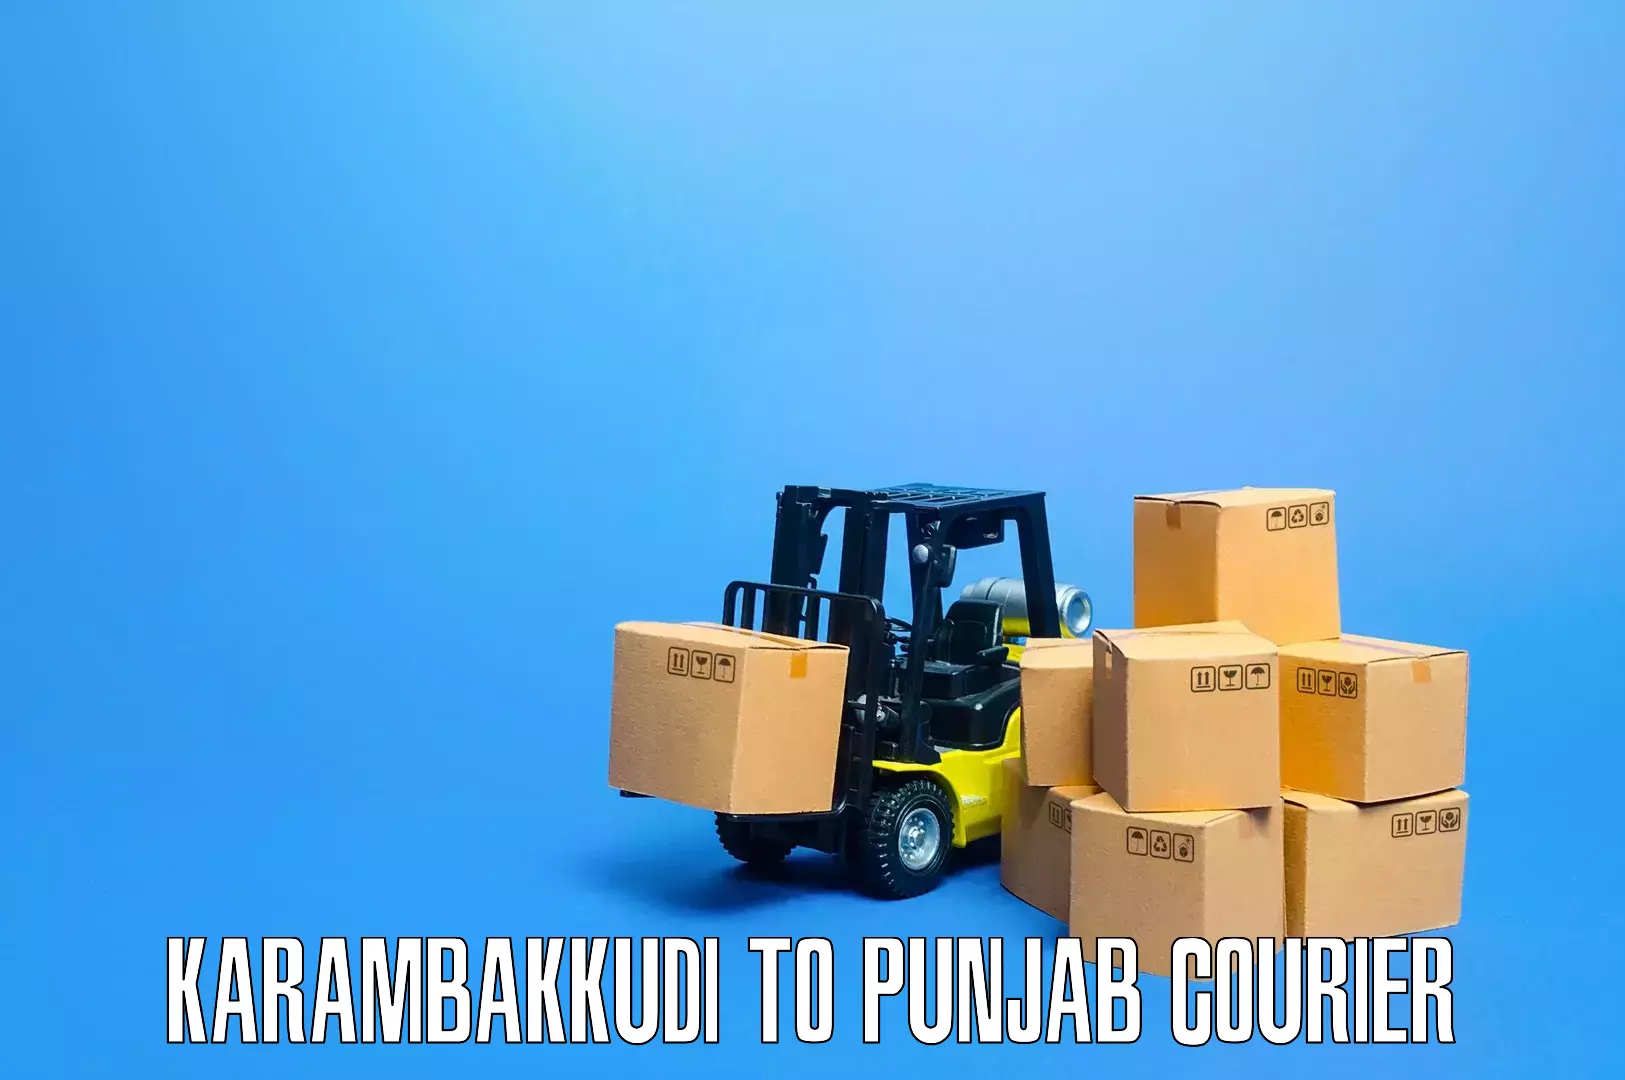 Quick moving services Karambakkudi to NIT Jallandhar